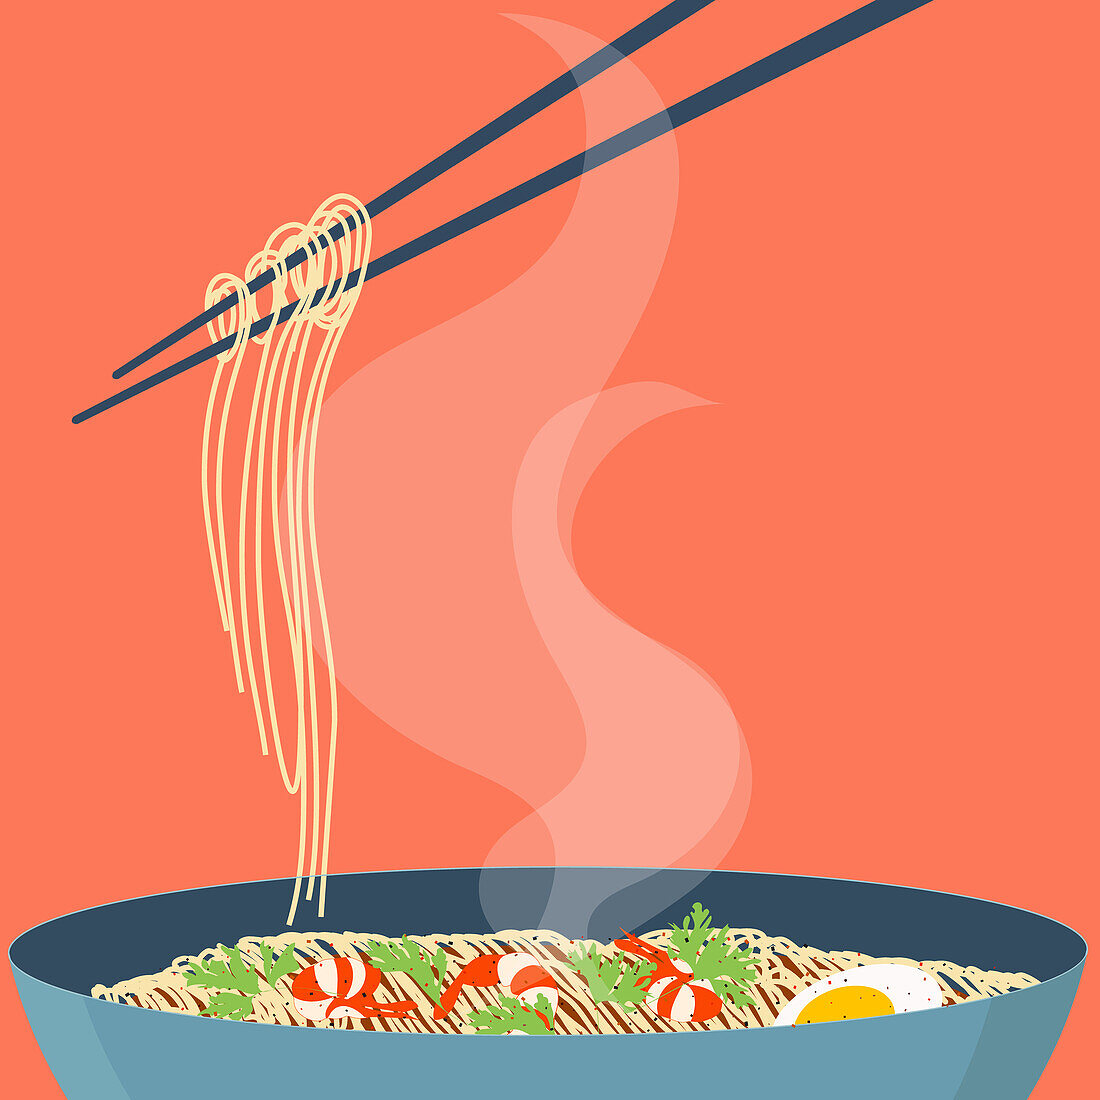 Noodles and chopsticks, illustration